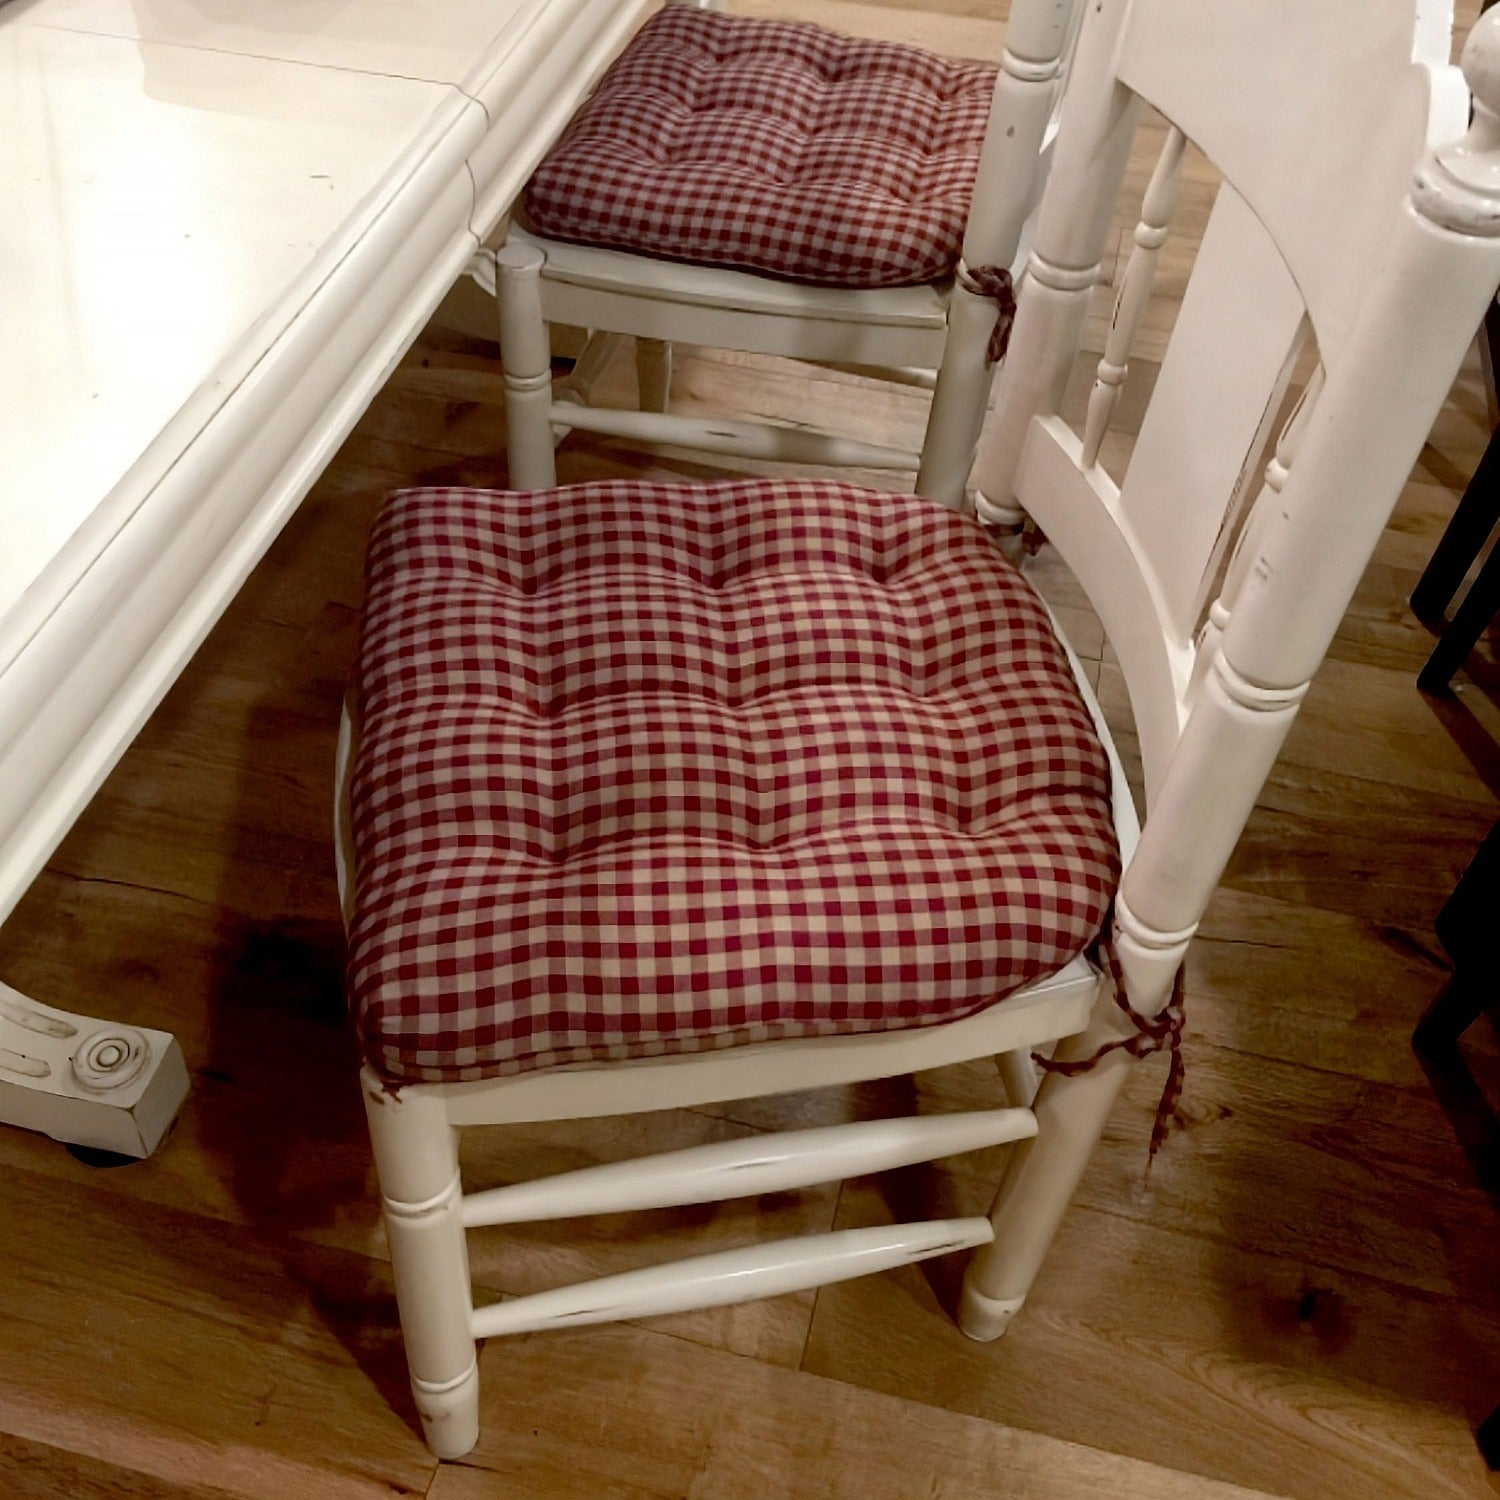 Checkered Crimson and Tan Dining Chair Cushion - Barnett Home Decor - Red & Tan